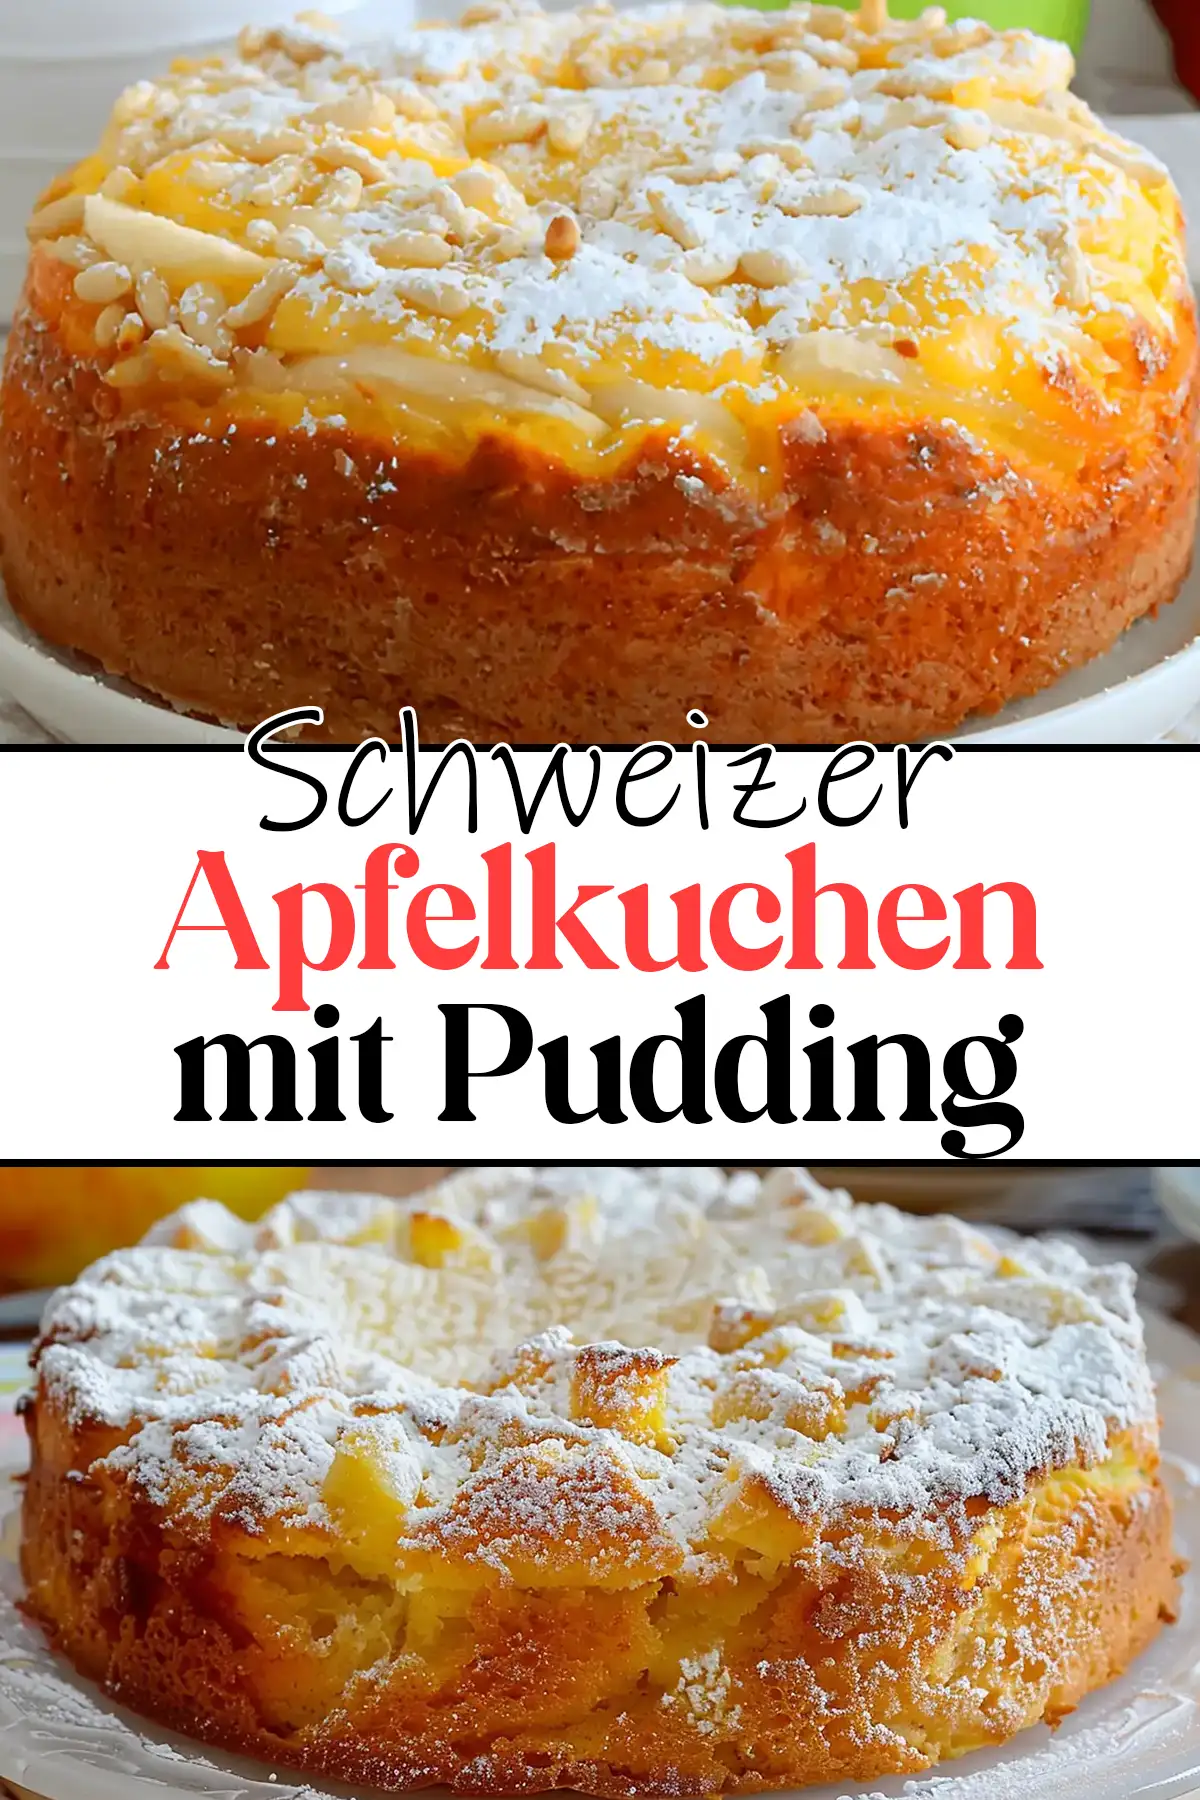 Schweizer Apfelkuchen mit Pudding Rezept